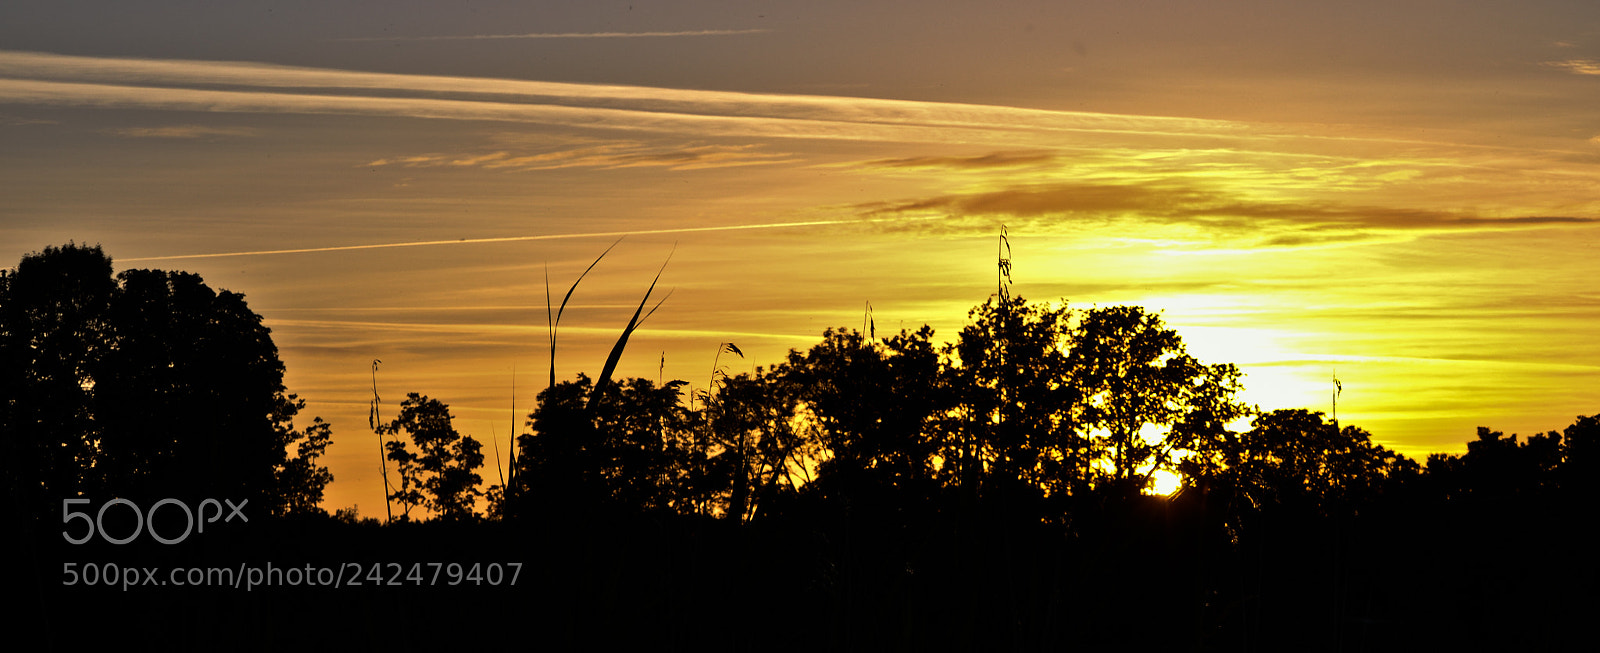 Nikon D3100 sample photo. Countryside dusk photography